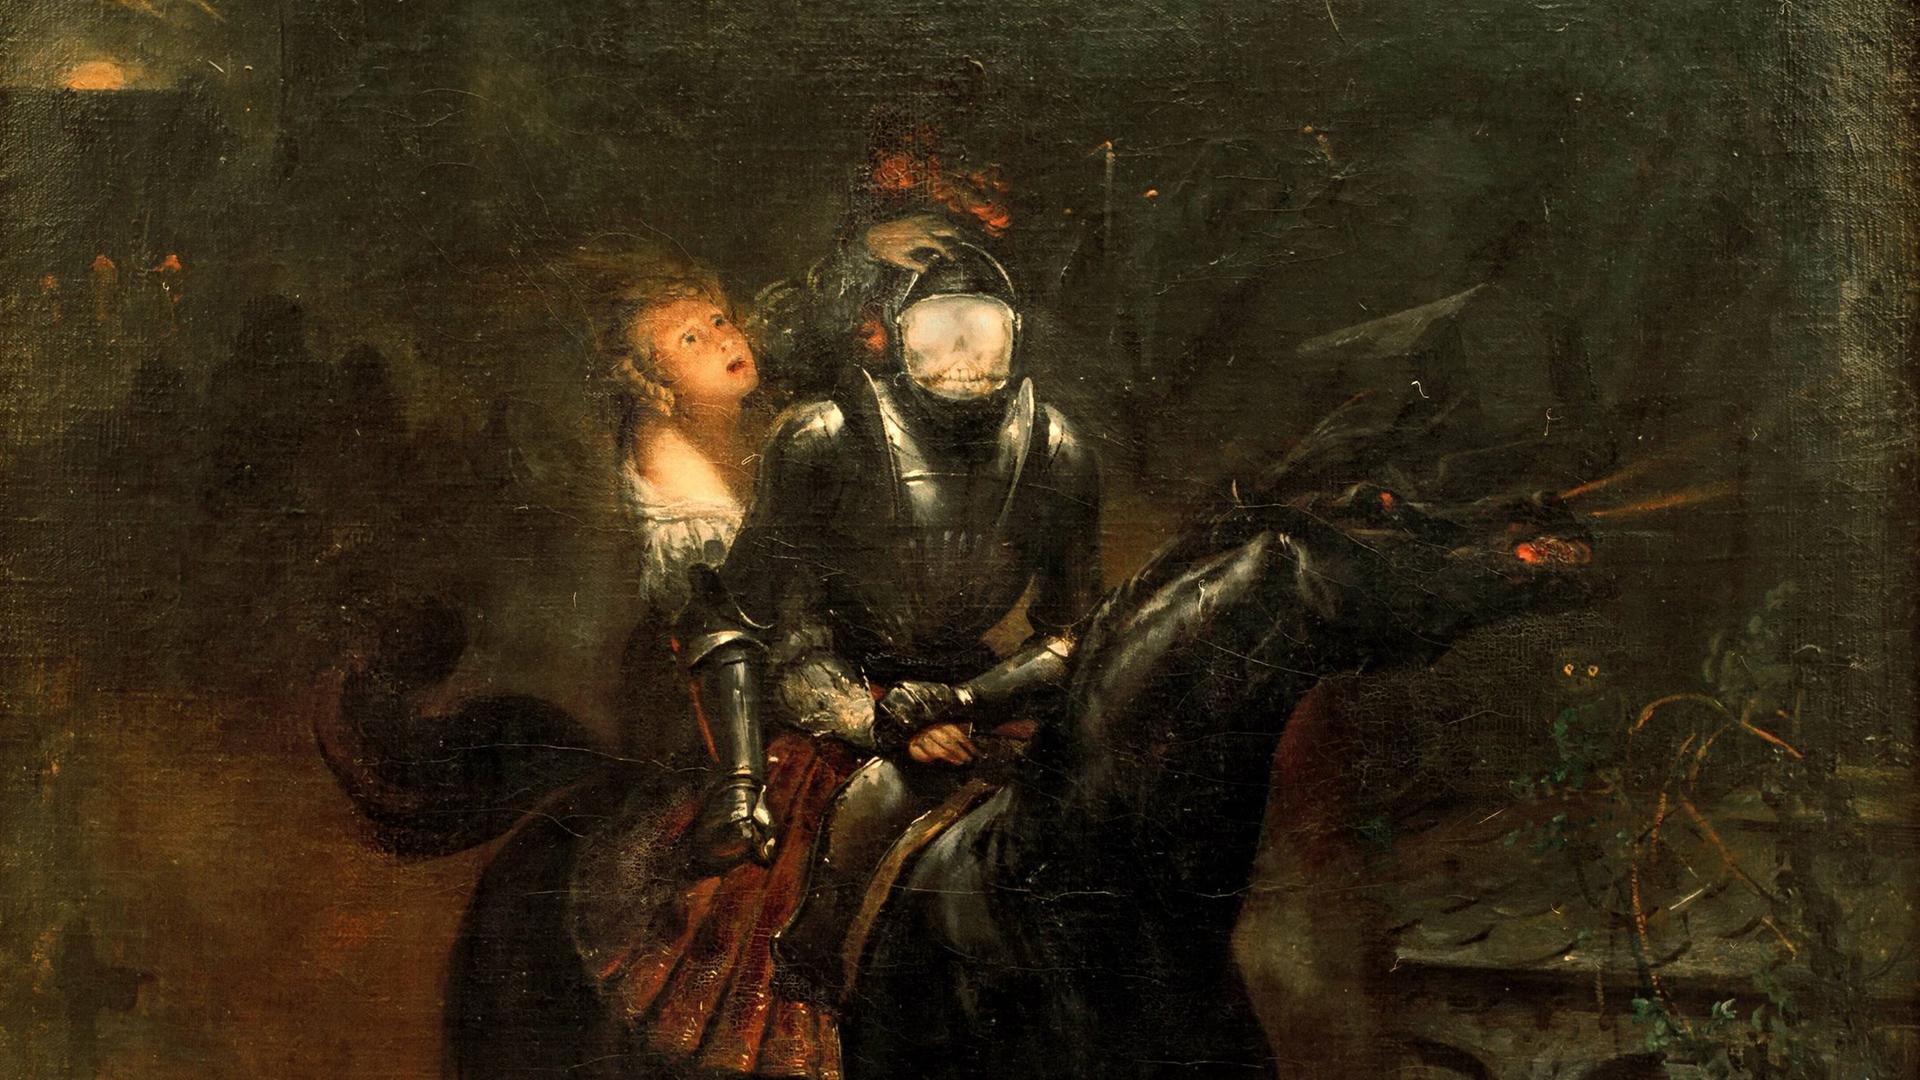 Berühmt wurde Gottfried August Bürger auch mit seiner unheimlichen Ballade "Lenore", hier illustriert vom französischen Maler Horace Vernet